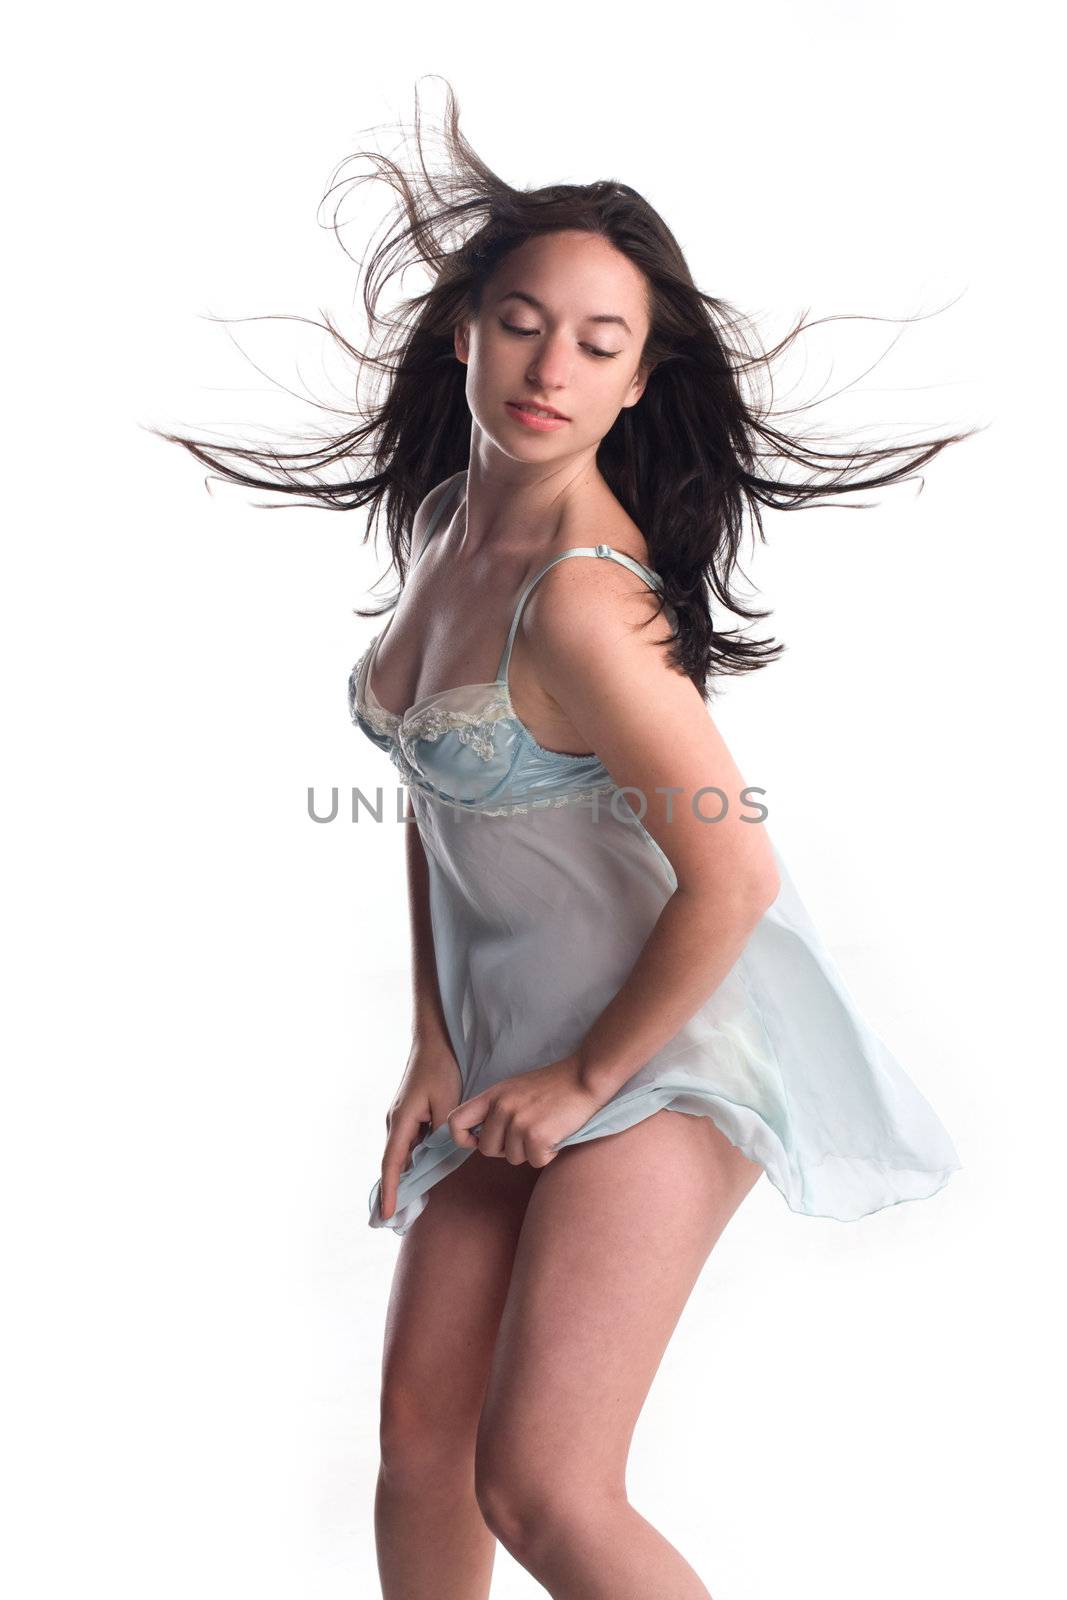 beautiful girl in blue lingerie in wind by krazeedrocks